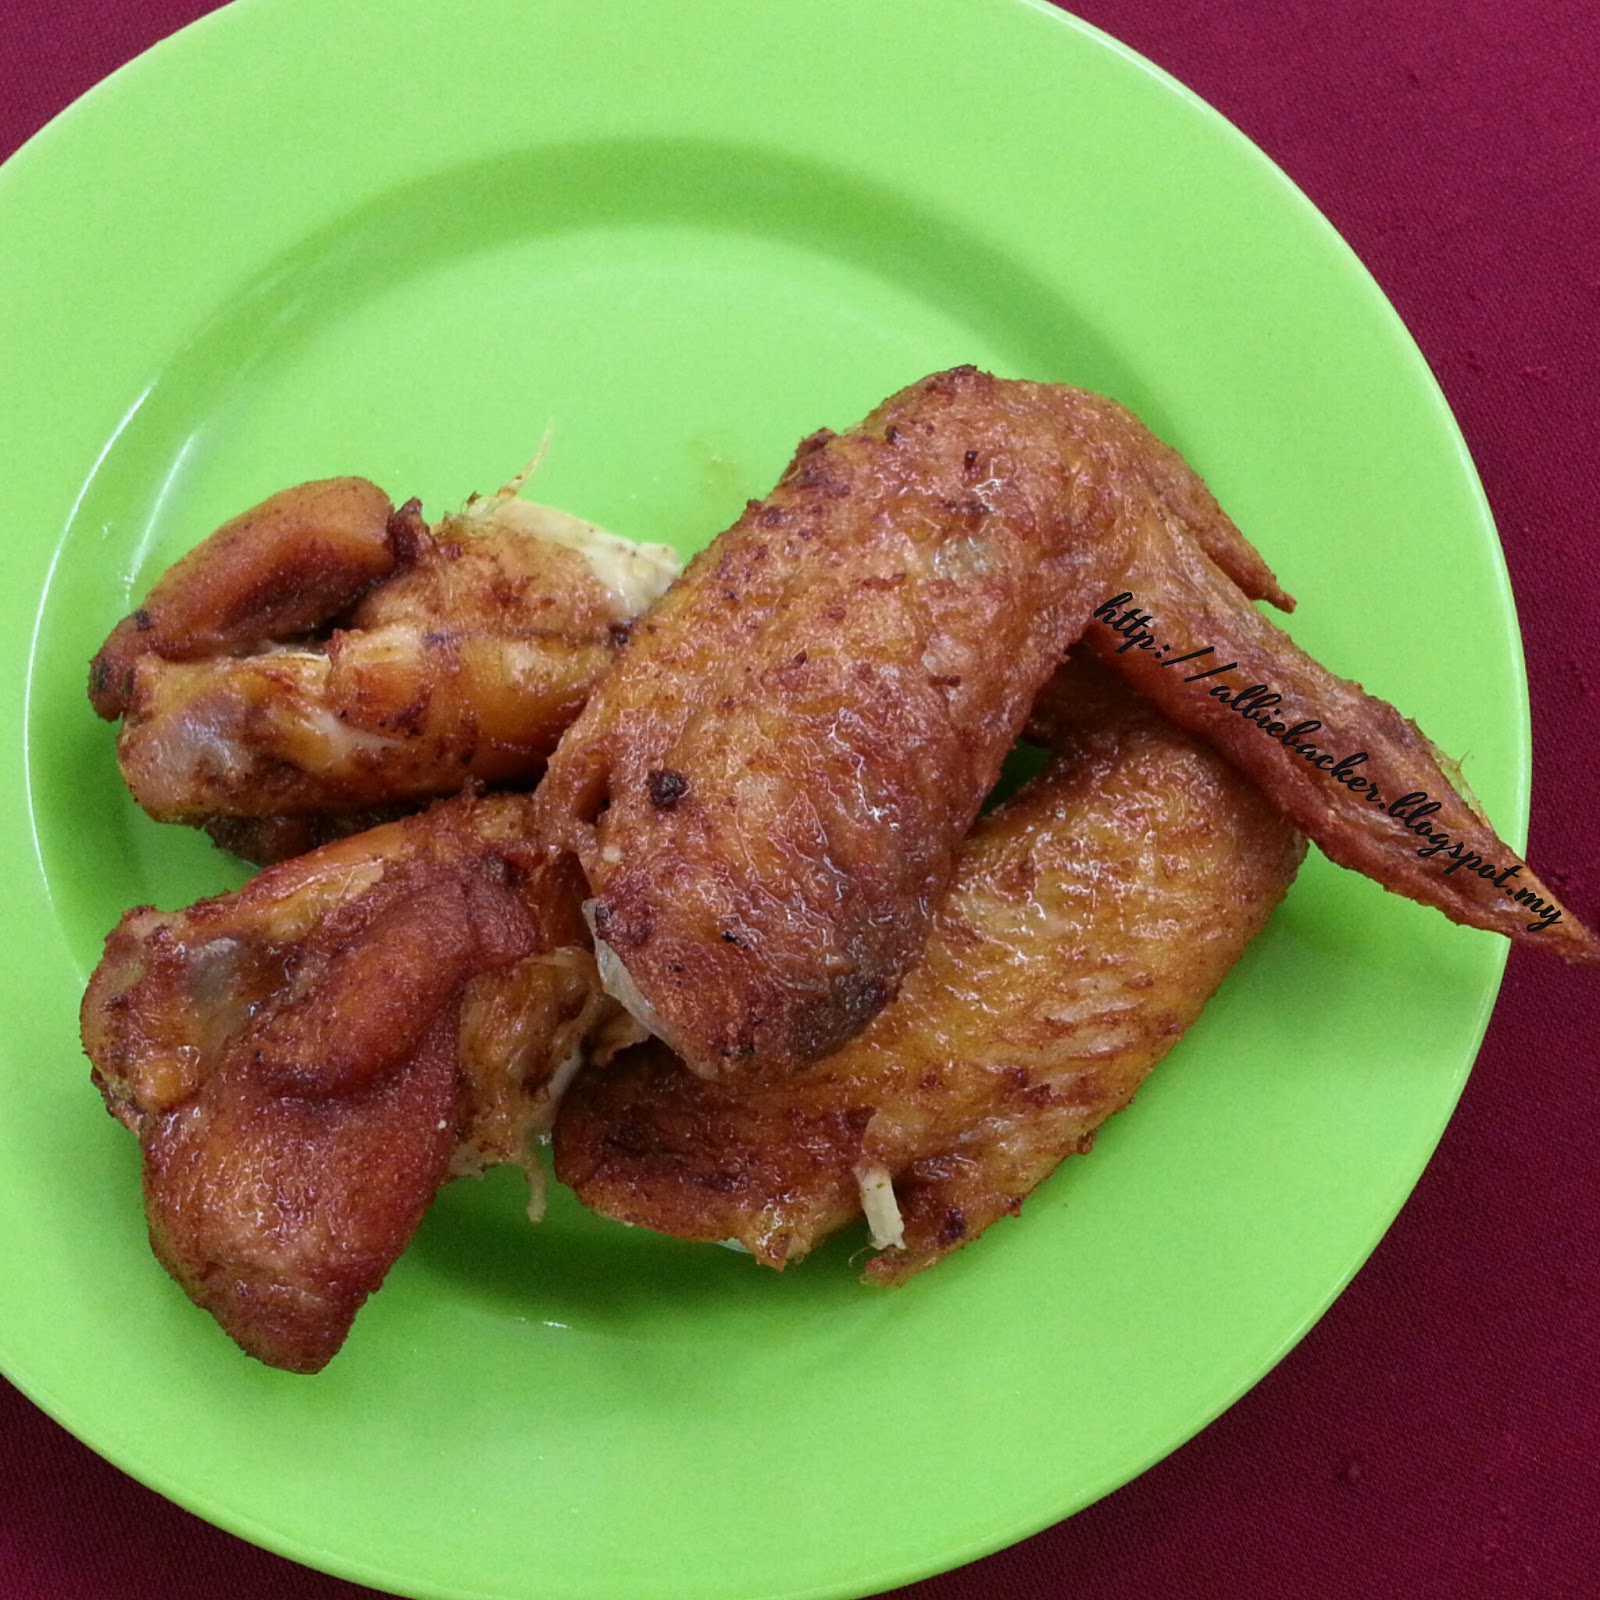 Food Review: Restoran Fatty Crab @ Taman Megah, PJ  ALBIE 